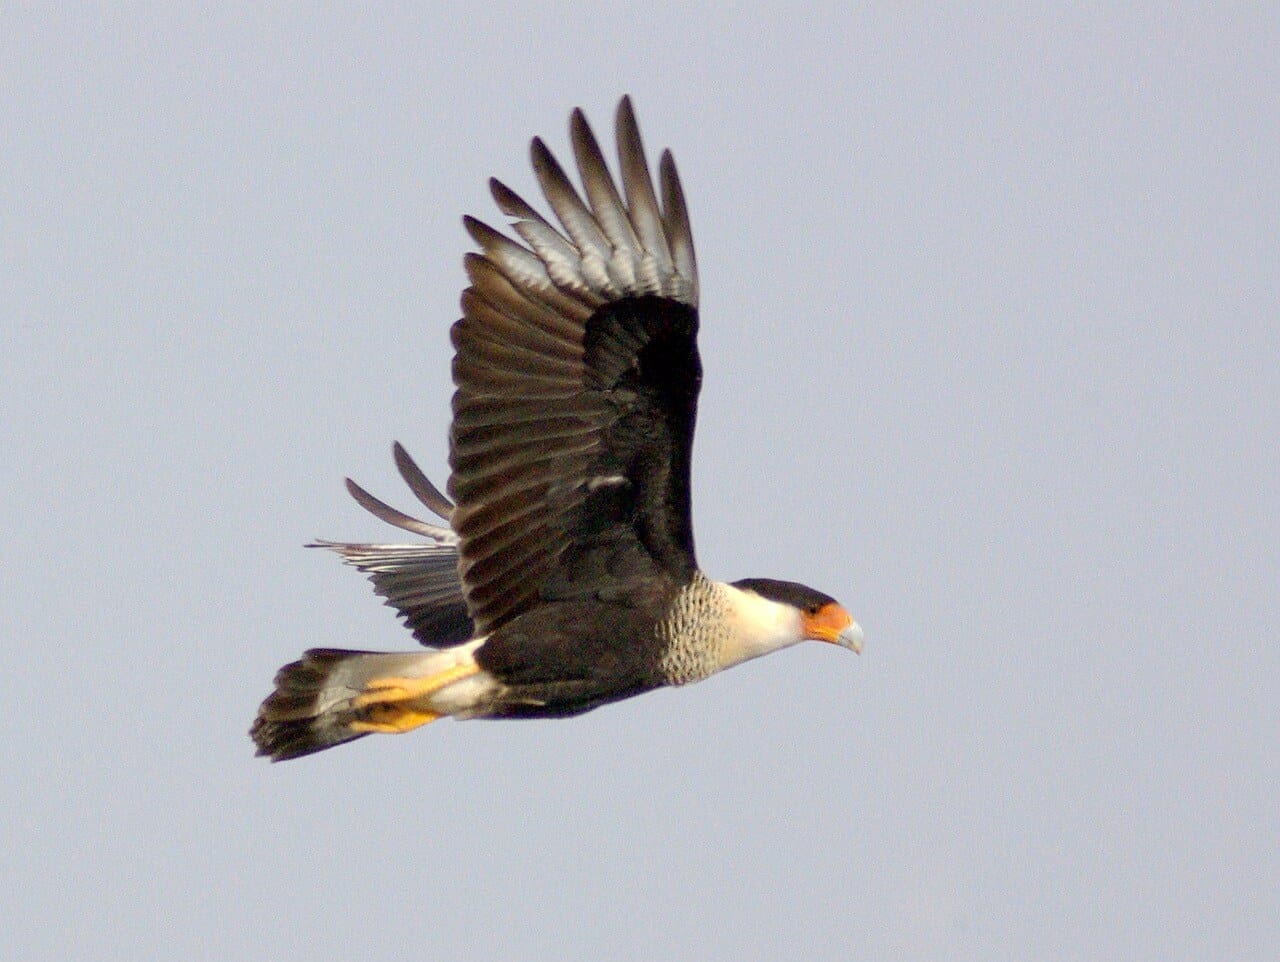 https://pixabay.com/photos/crested-caracara-bird-flying-wild-2077698/